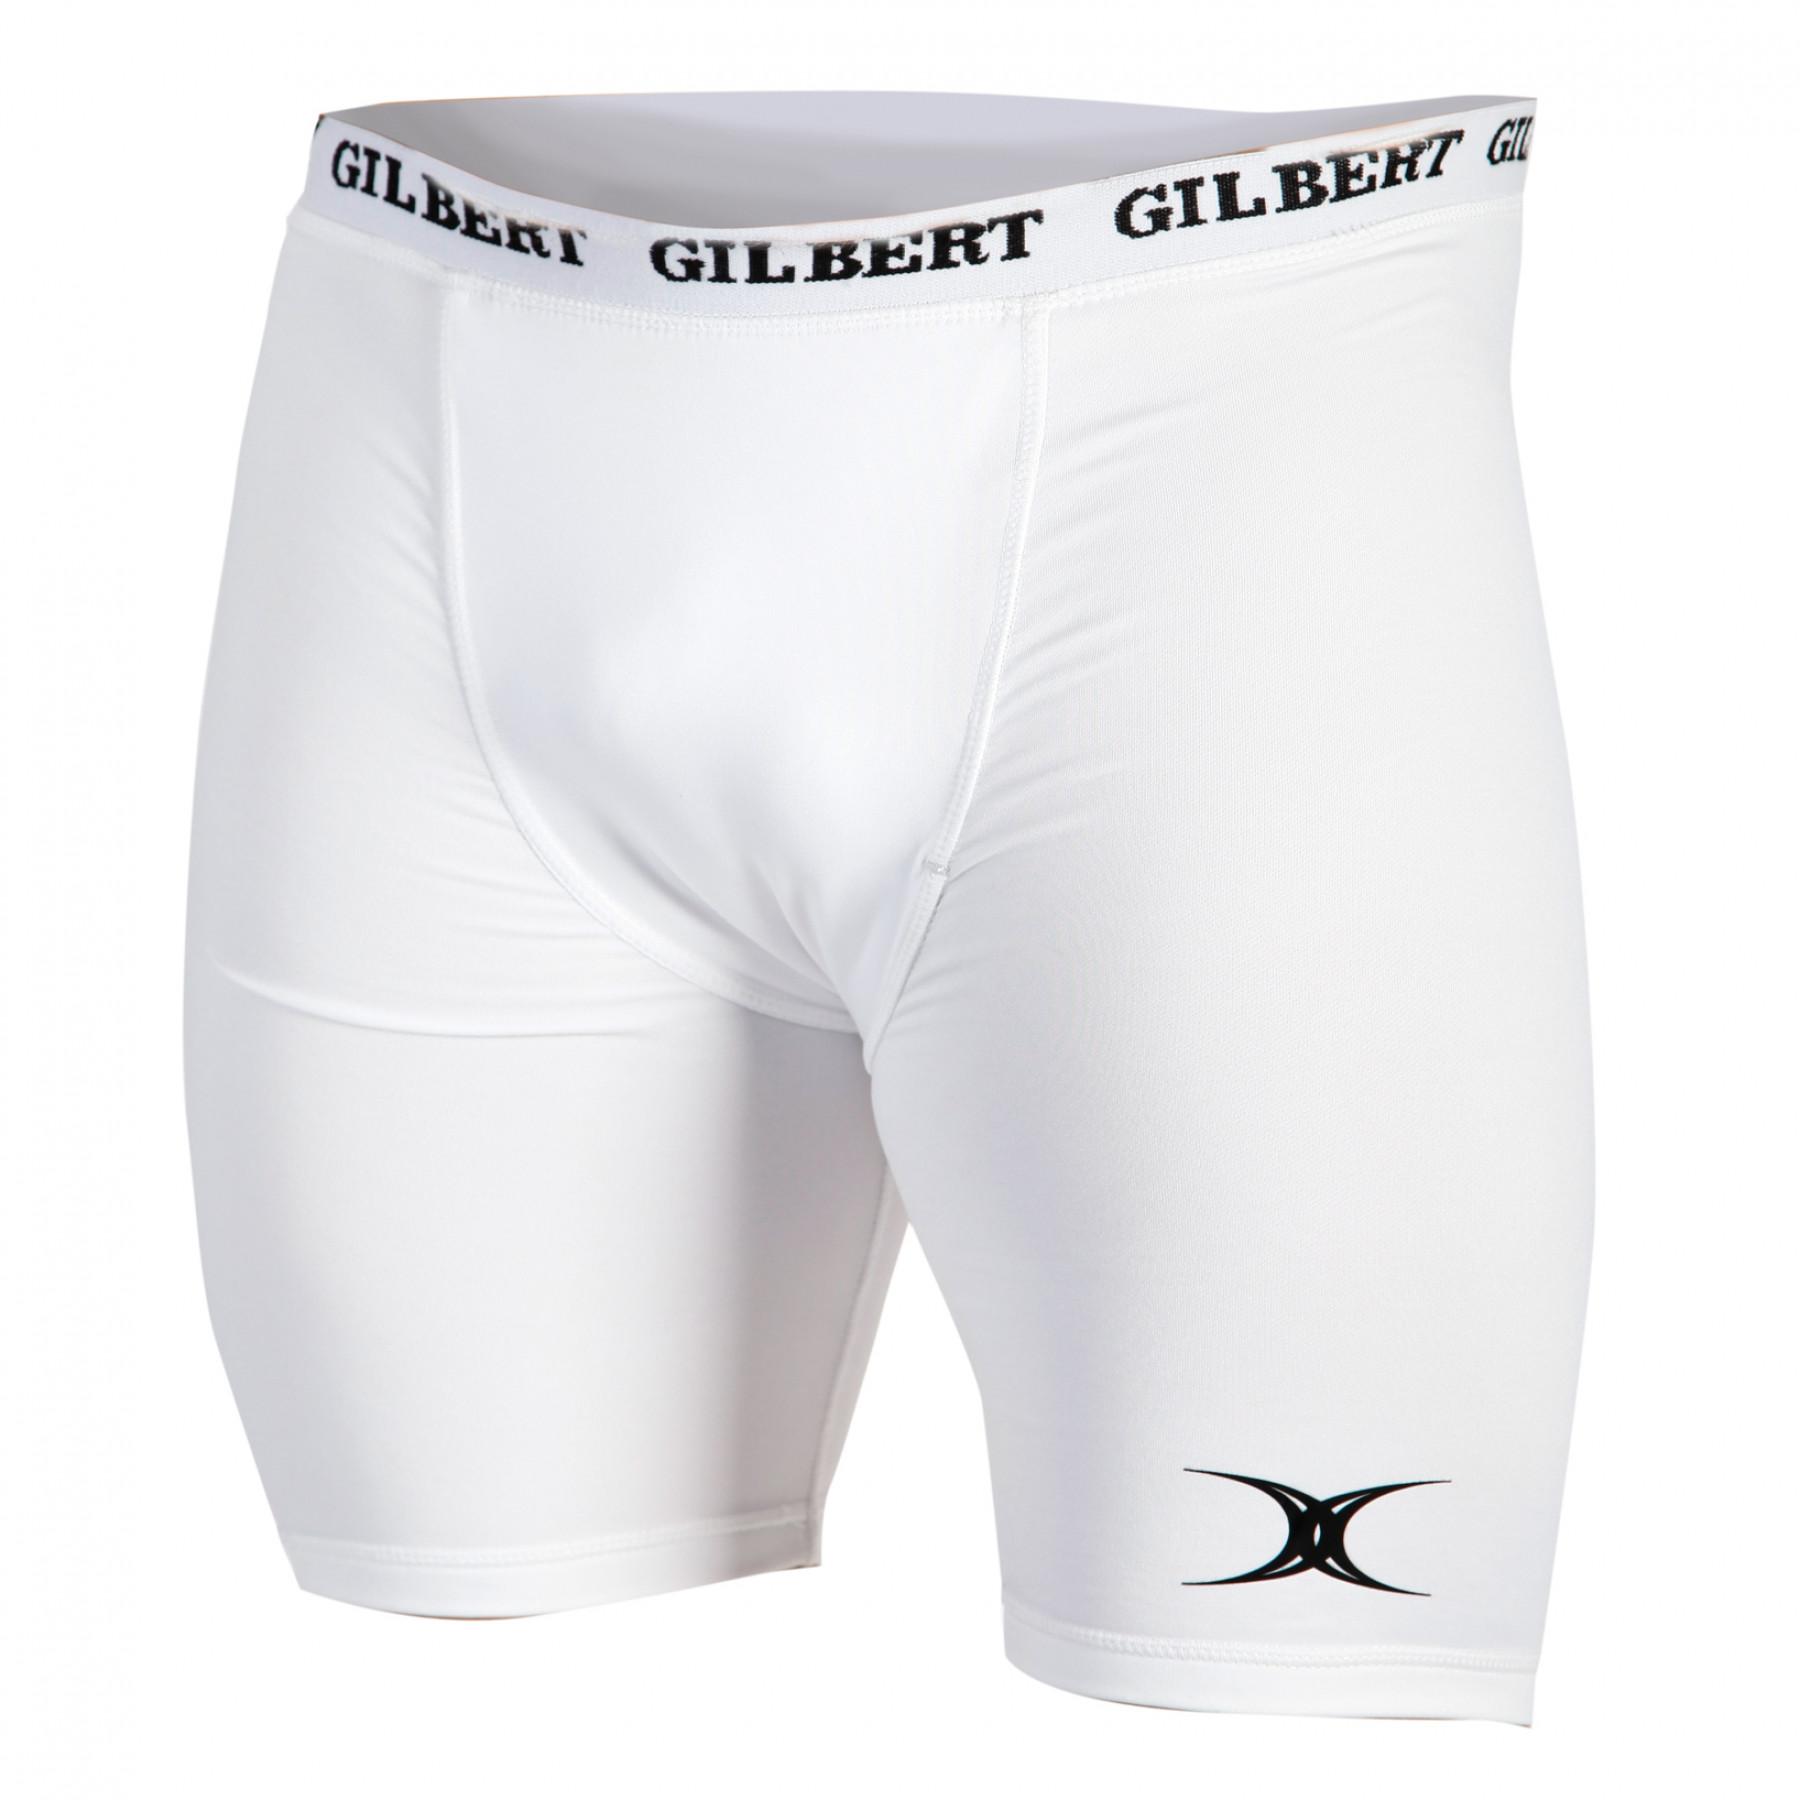 Kinder-Unterhosen Gilbert Thermo II